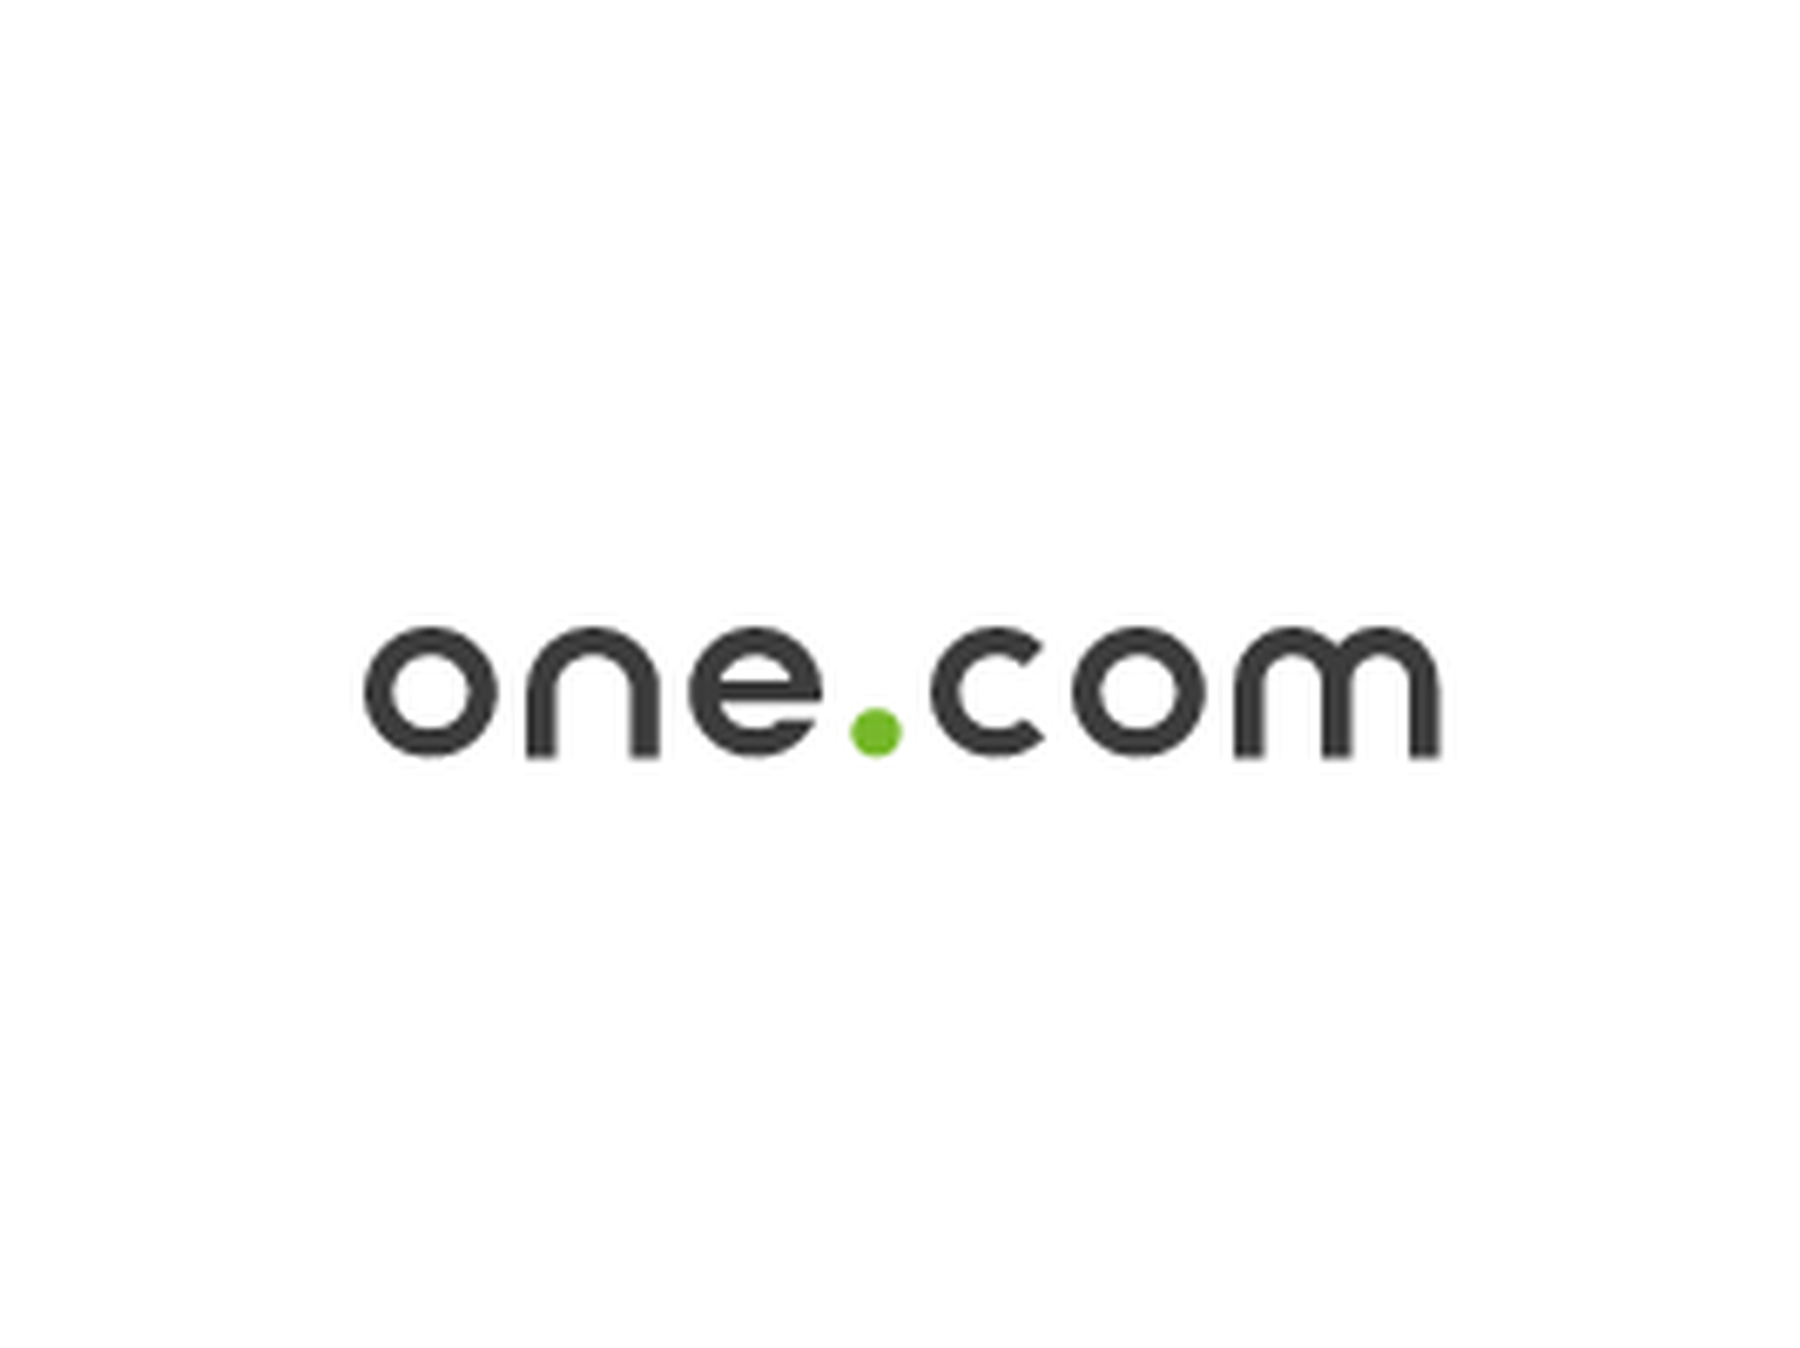 One.com rabattkode